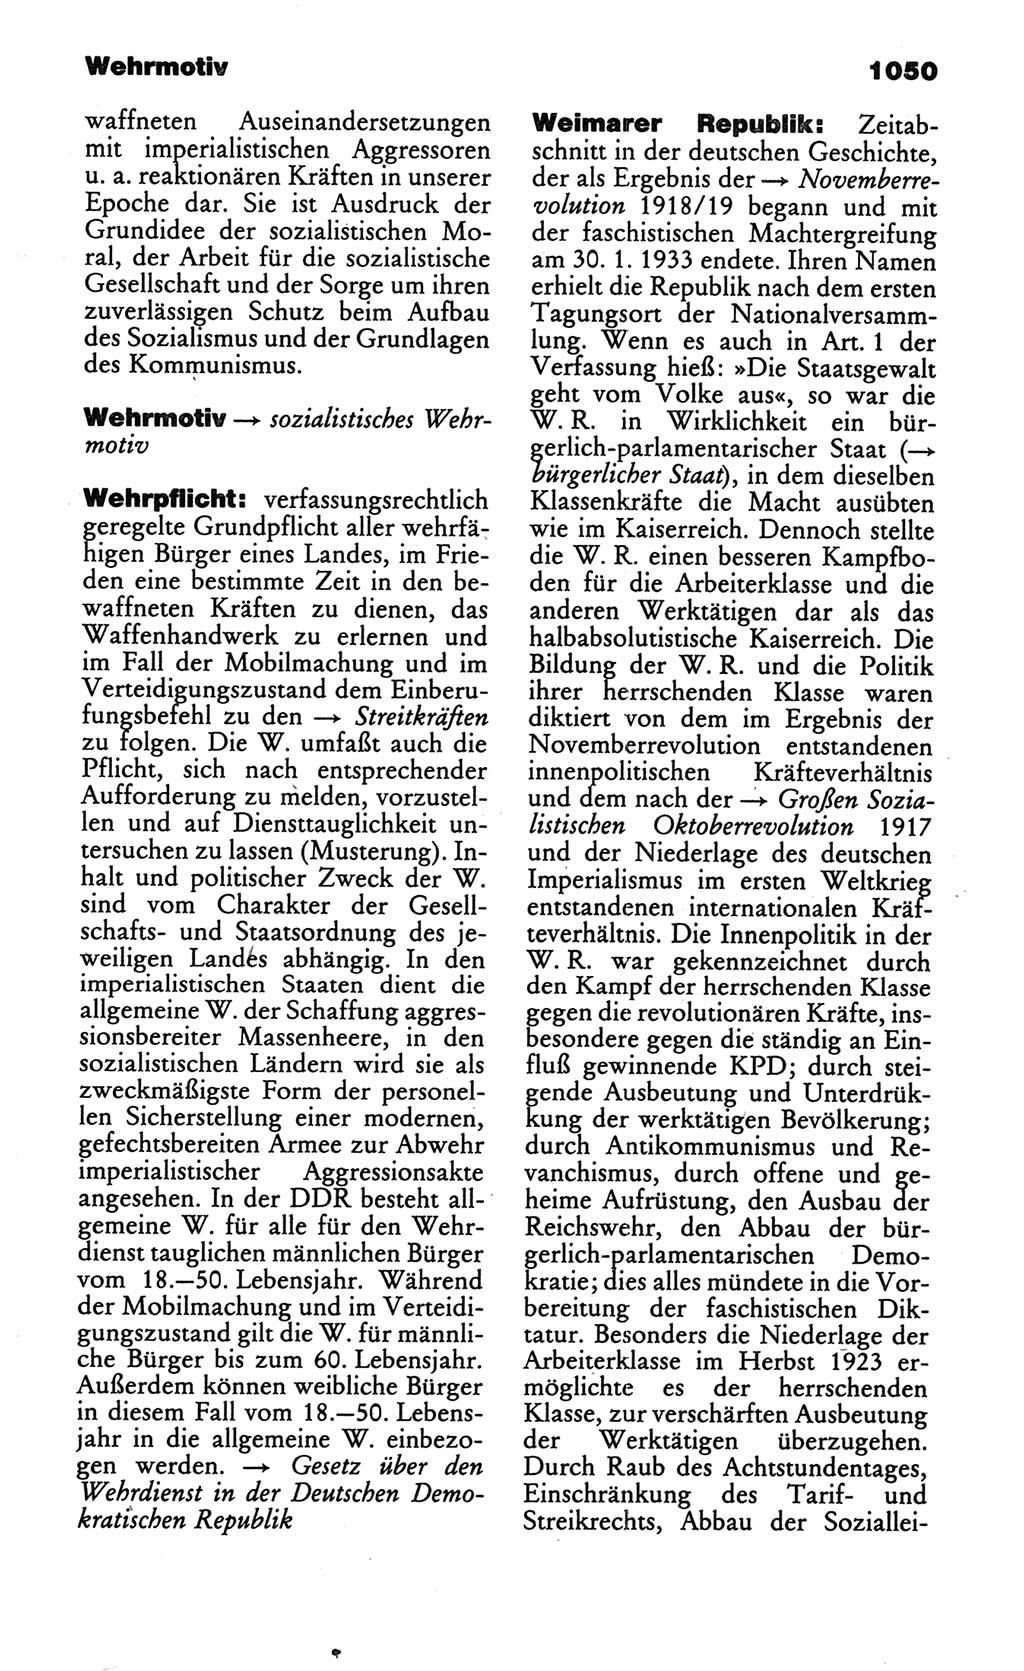 Kleines politisches Wörterbuch [Deutsche Demokratische Republik (DDR)] 1986, Seite 1050 (Kl. pol. Wb. DDR 1986, S. 1050)